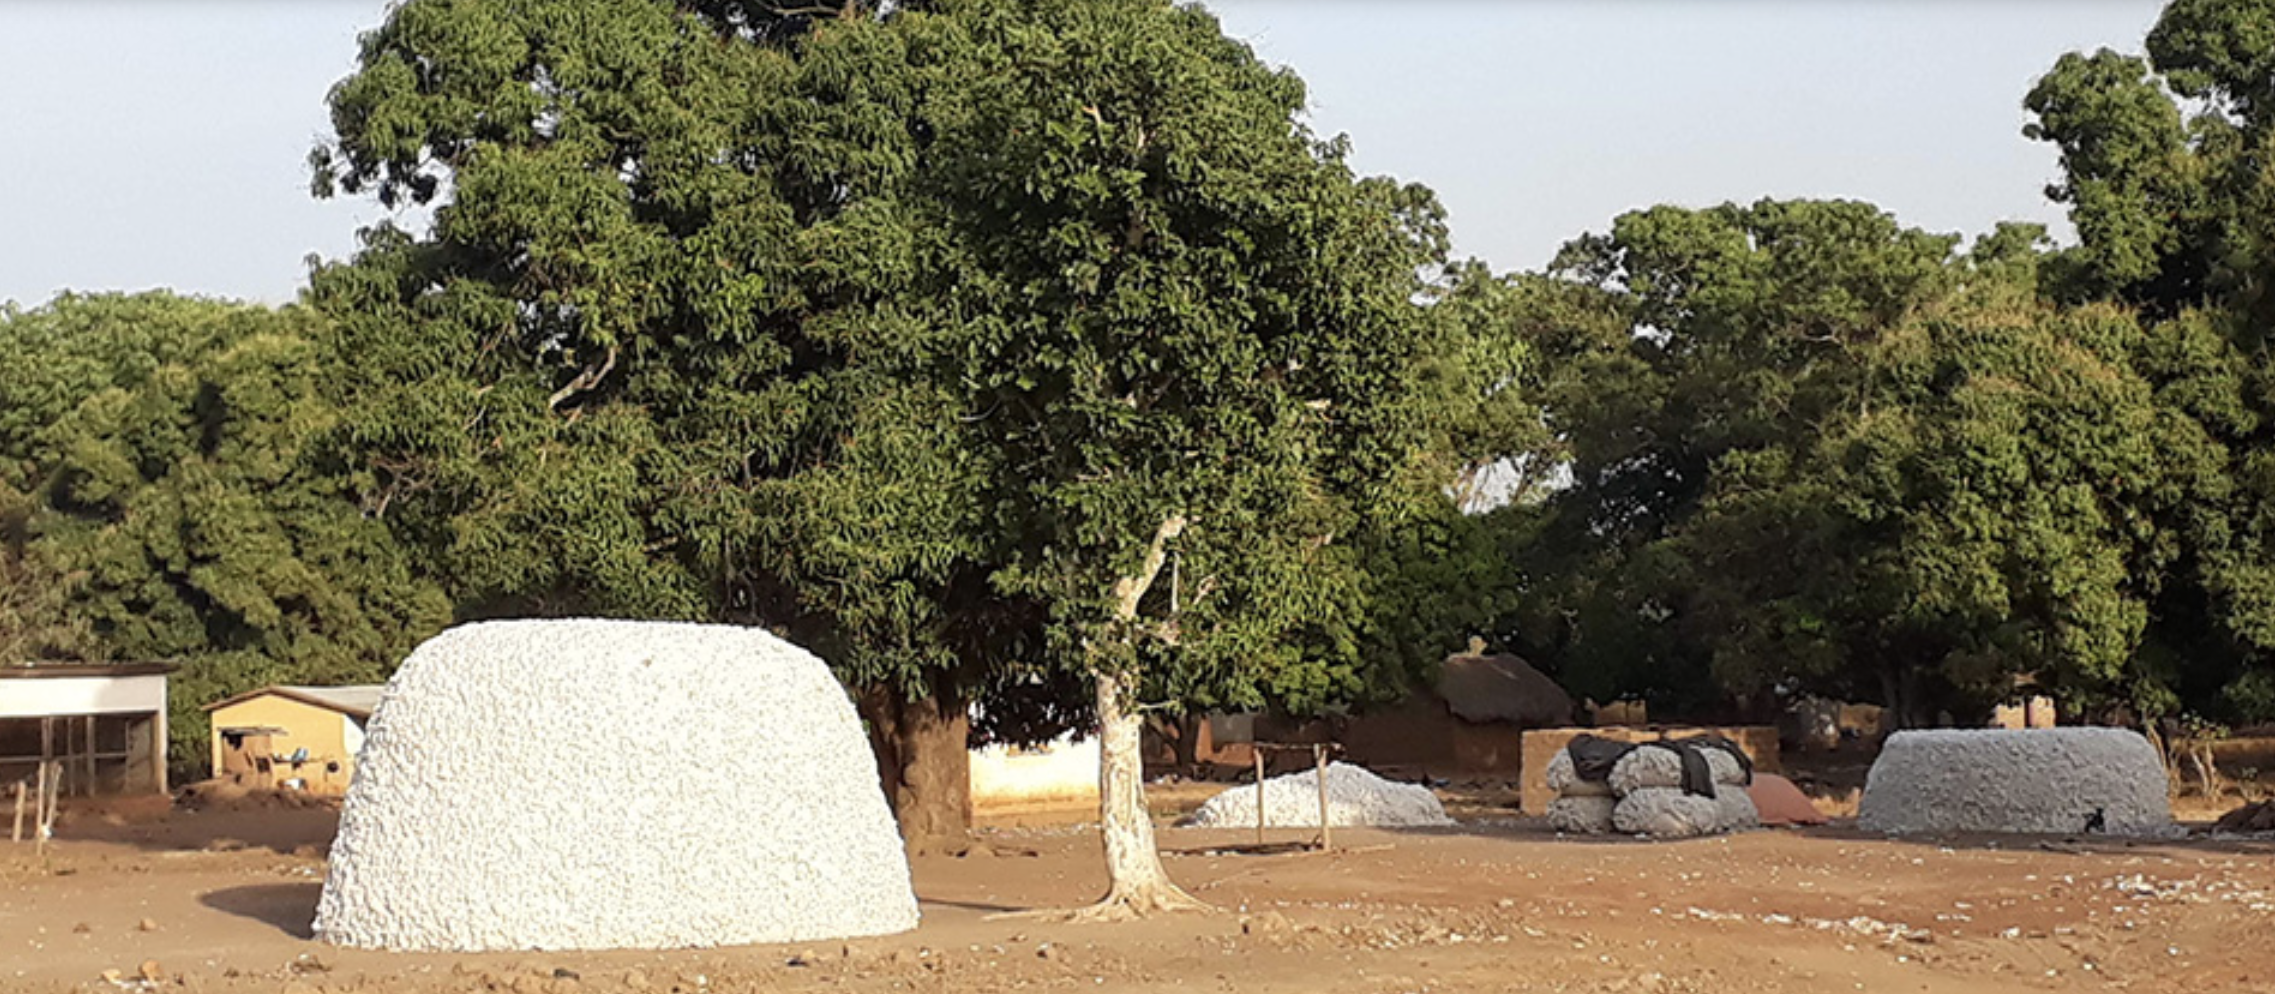 Collège agricole rurale en Côte d’Ivoire avec la Louis Dreyfus Foundation.